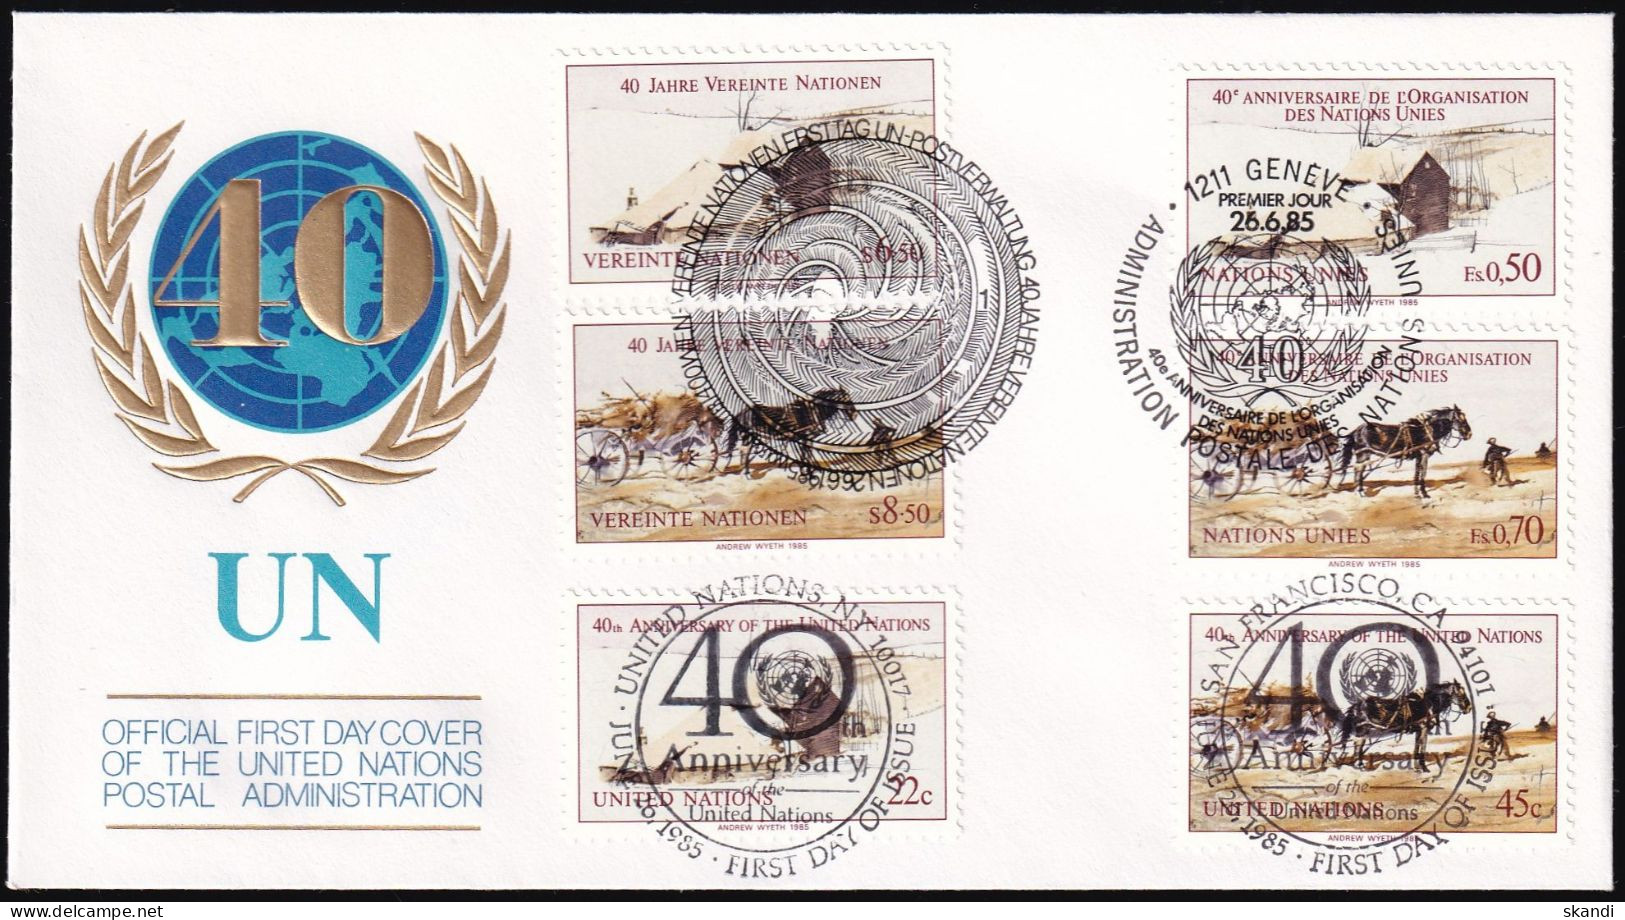 UNO NEW YORK - WIEN - GENF 1985 TRIO-FDC 40 Jahre Vereinte Nationen - Emisiones Comunes New York/Ginebra/Vienna